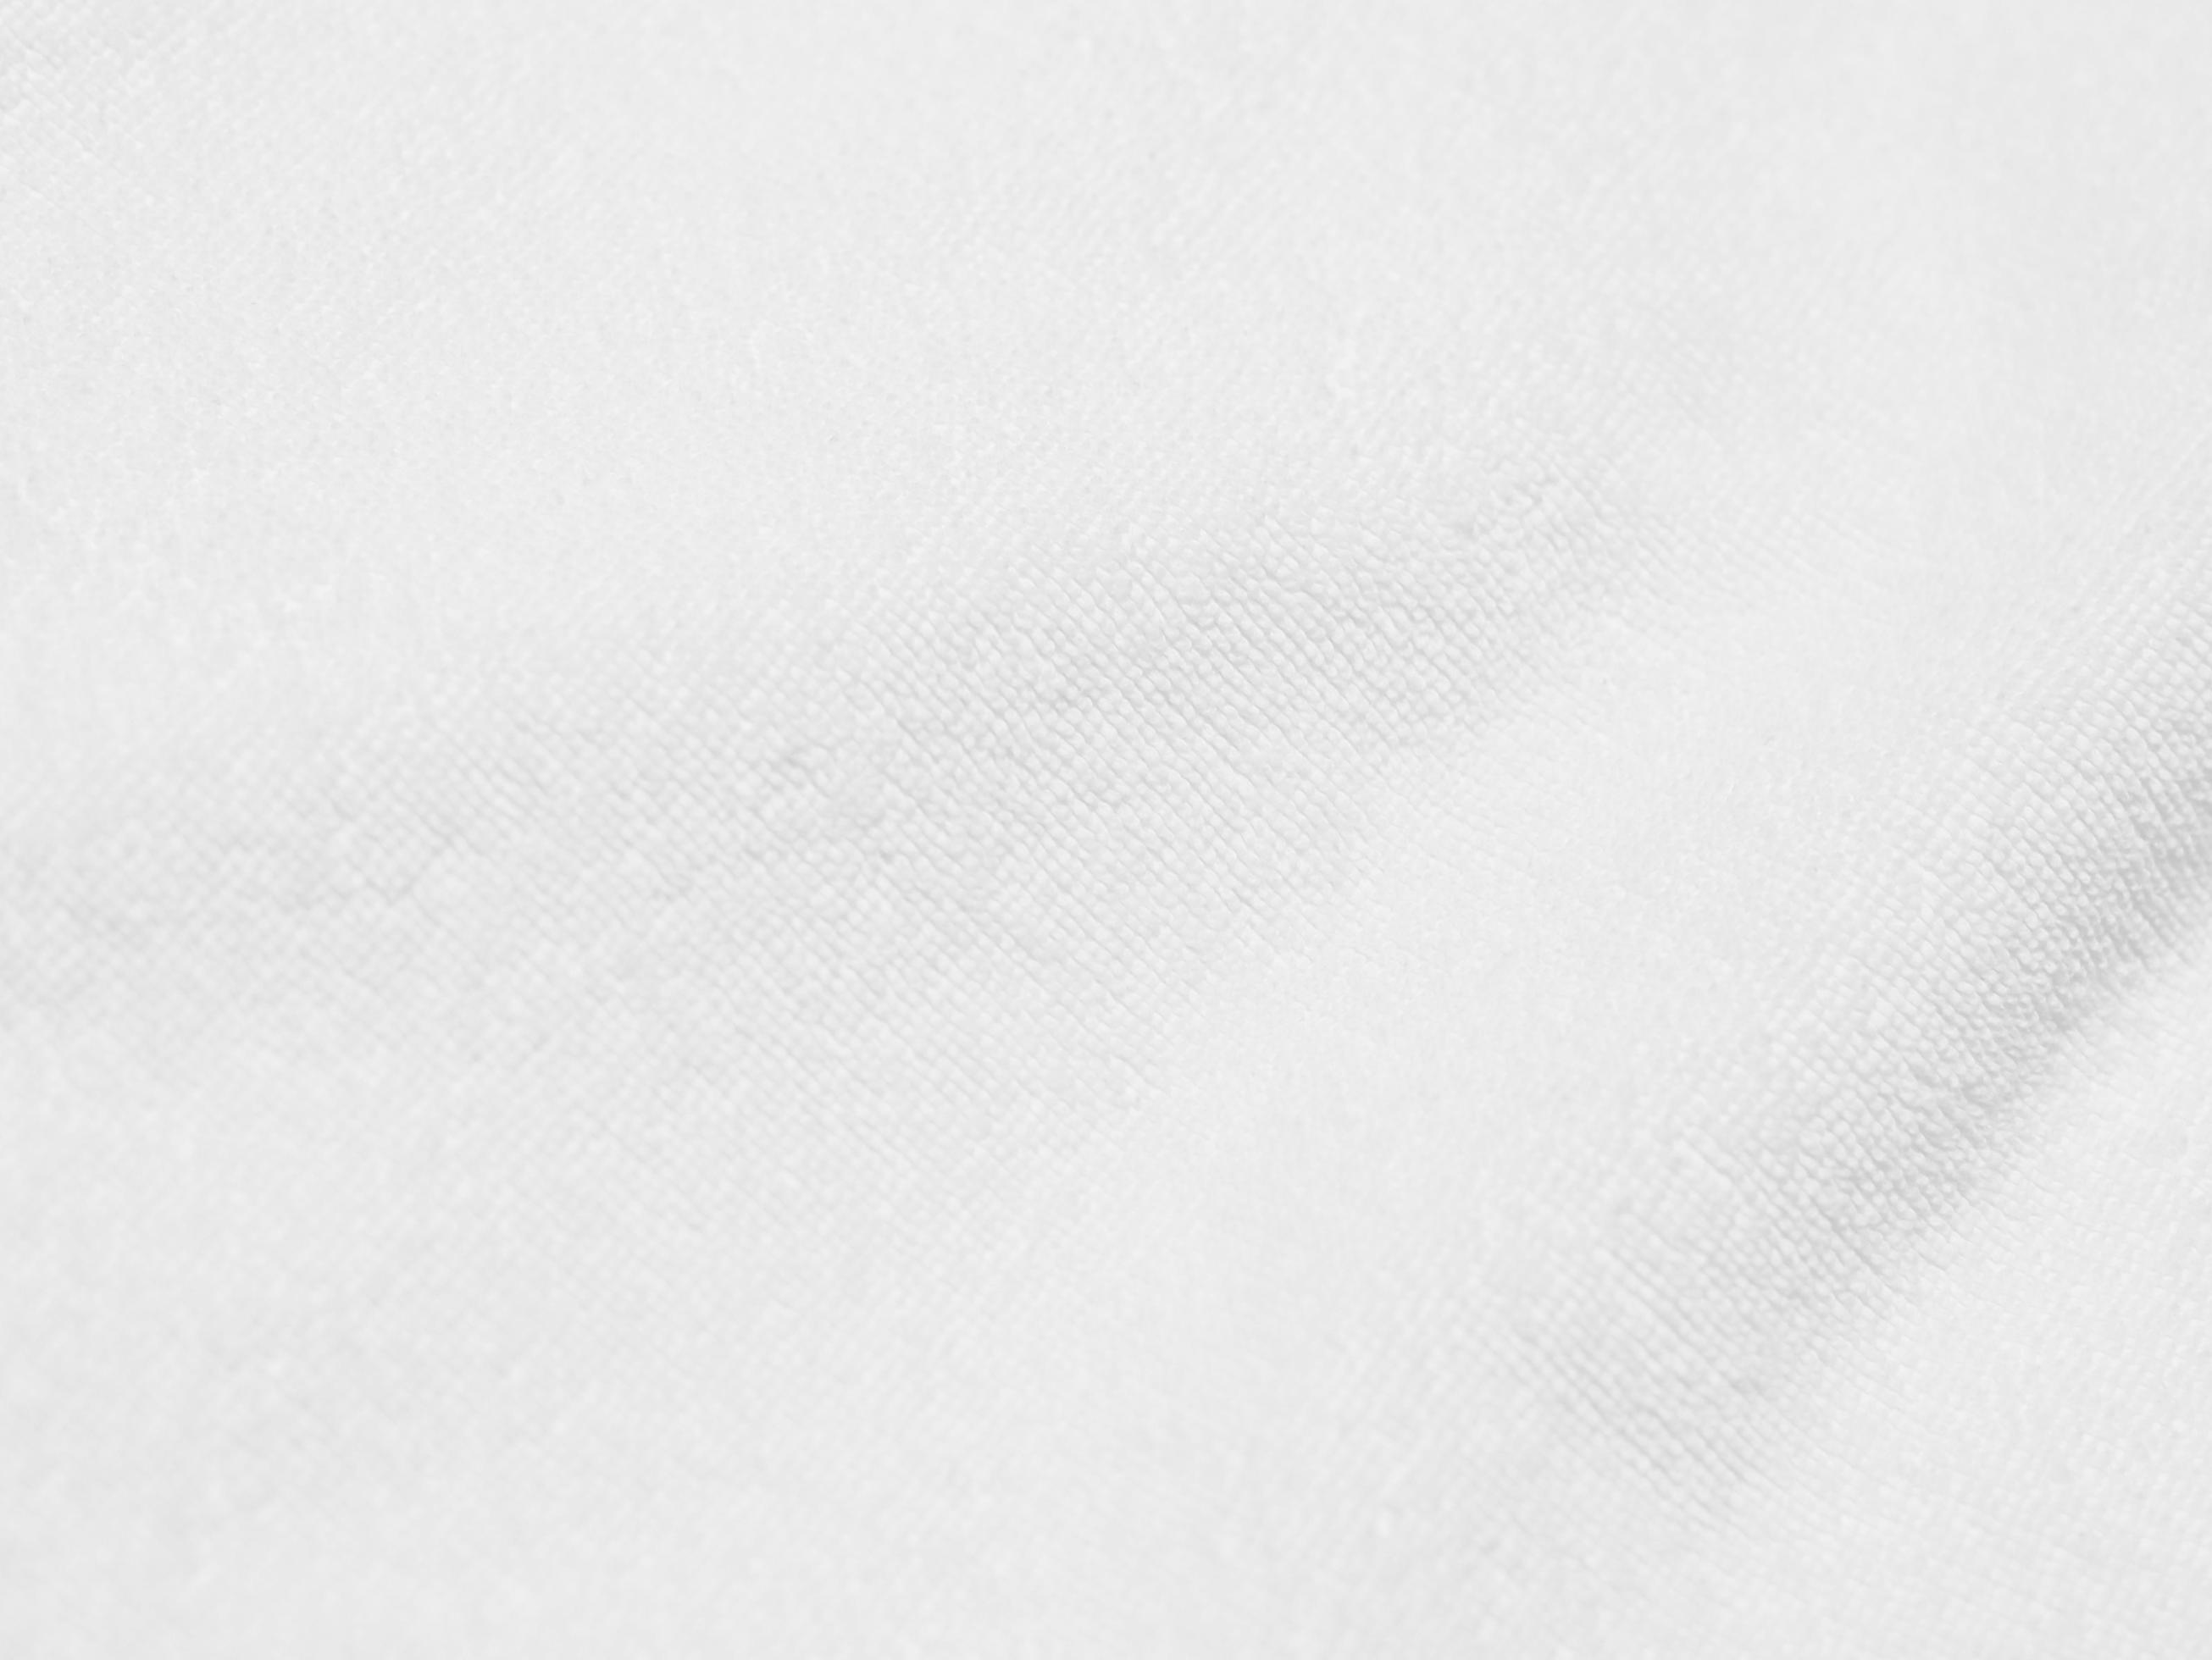 Fond De Texture De Laine Blanche Propre Laine De Mouton Naturelle Légère  Texture De Coton Blanc Sans Couture De Fourrure Duveteuse Pour Les  Concepteurs Gros Plan Fragment Tapis De Laine Blanche